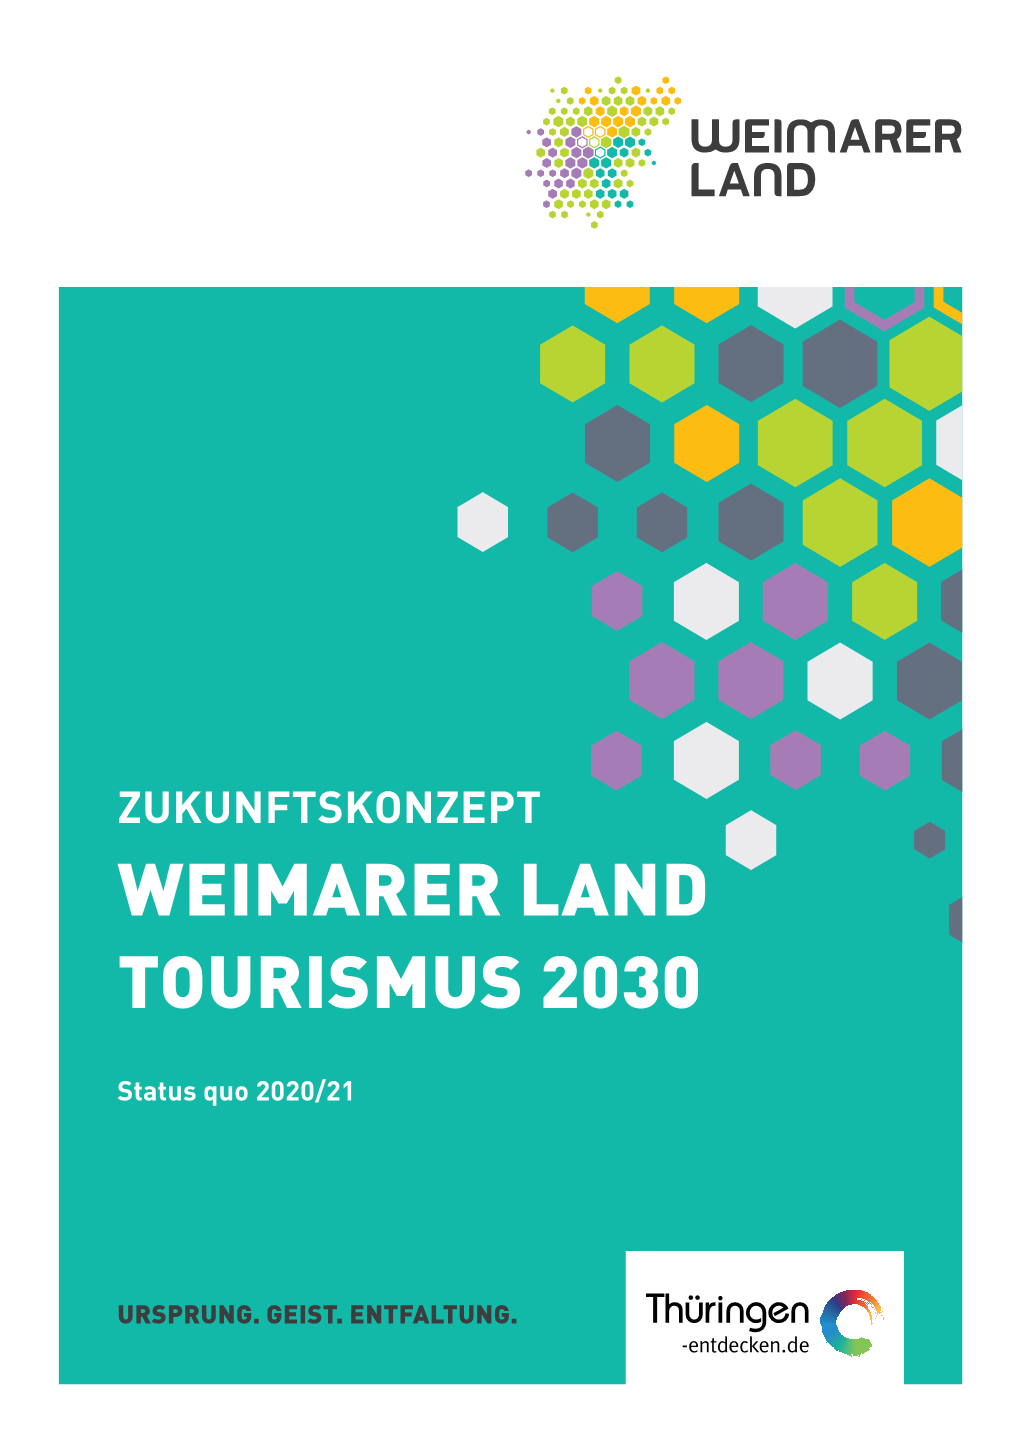 Zukunftskonzept Weimarer Land Tourismus 2030